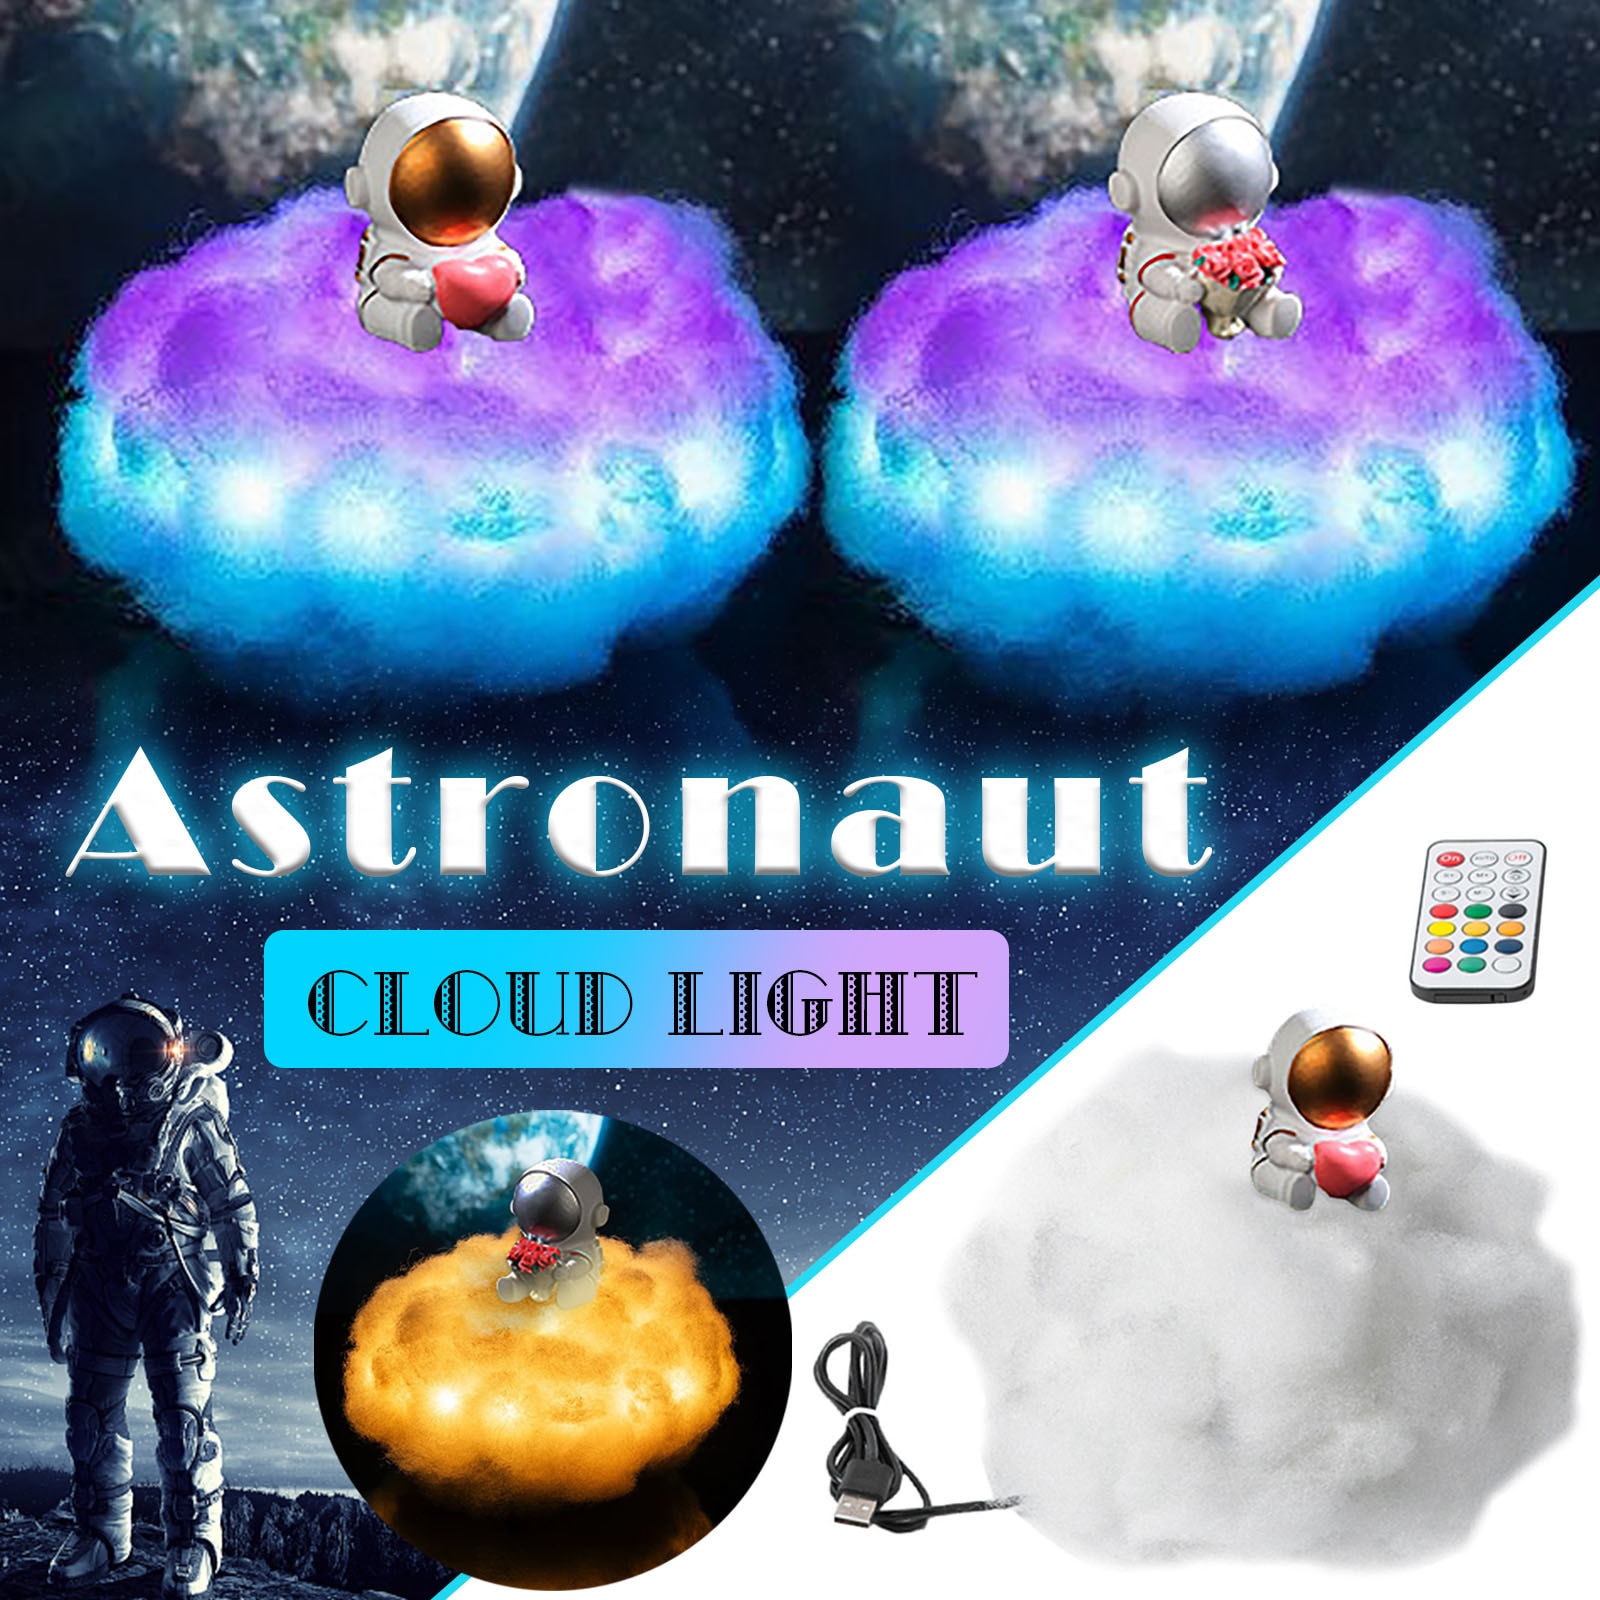 Led Kleurrijke Wolken Astronaut Lamp Met Regenboog Effect Als Kinderen Nachtlampje Creatieve